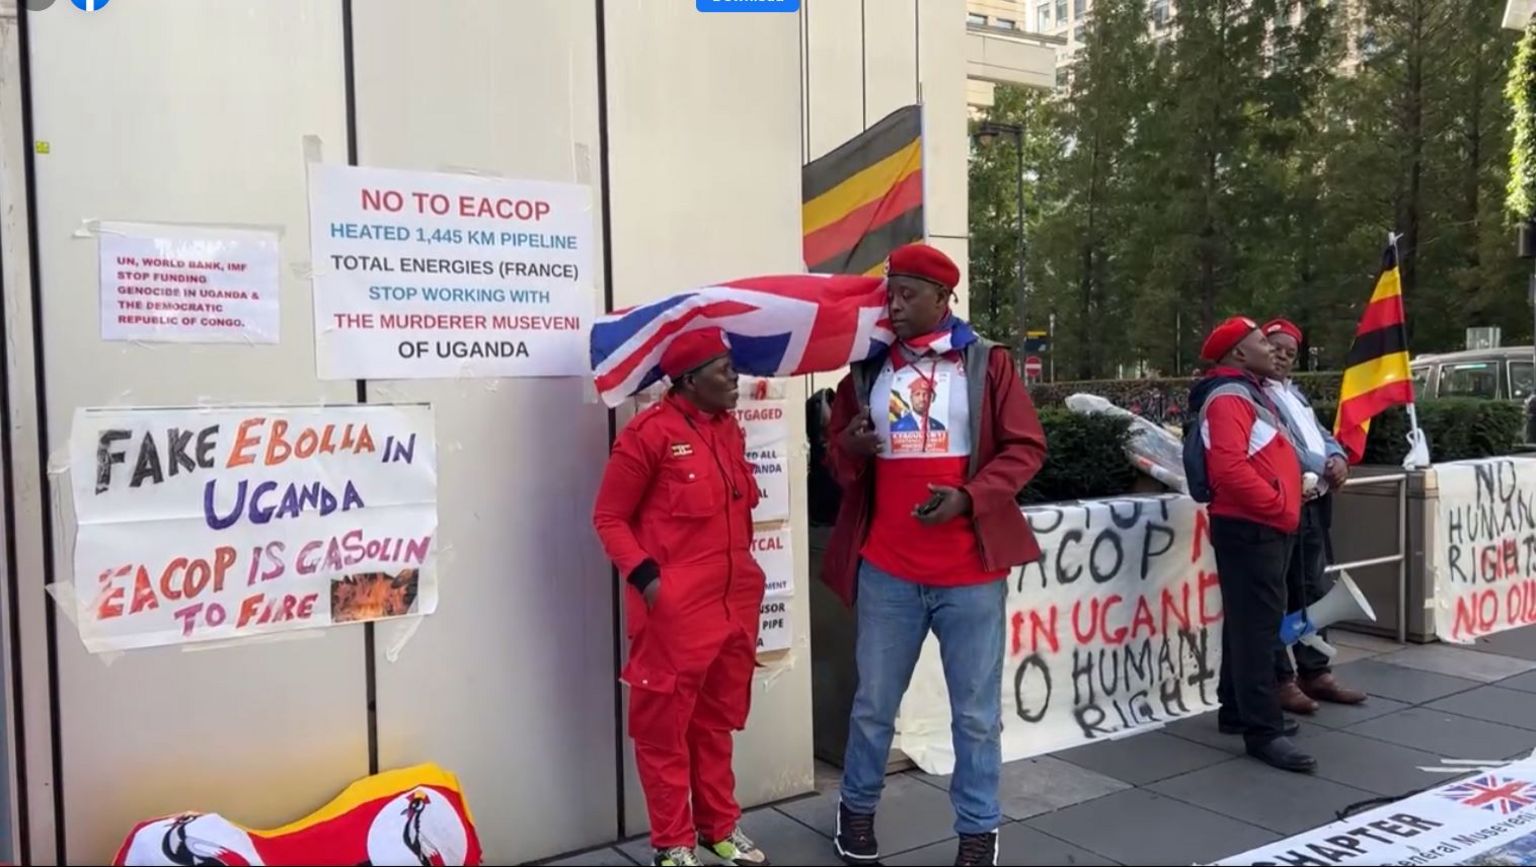 Угандийцы на акции протеста в Лондоне с плакатом с сообщением о том, что вспышка ненастоящая